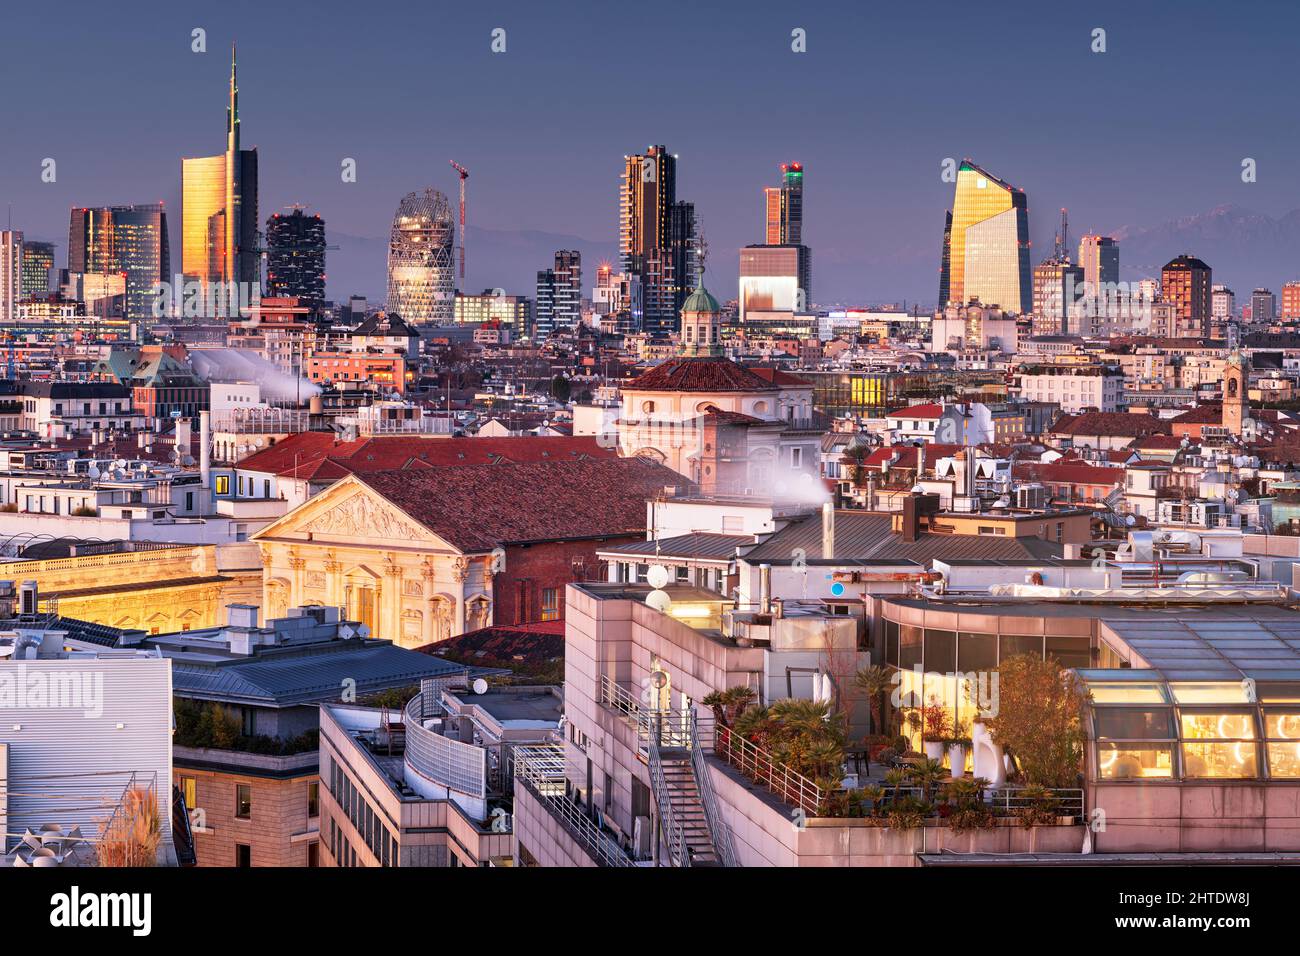 Mailand, Italien Skyline mit neuer und alter Architektur in der Abenddämmerung. Stockfoto